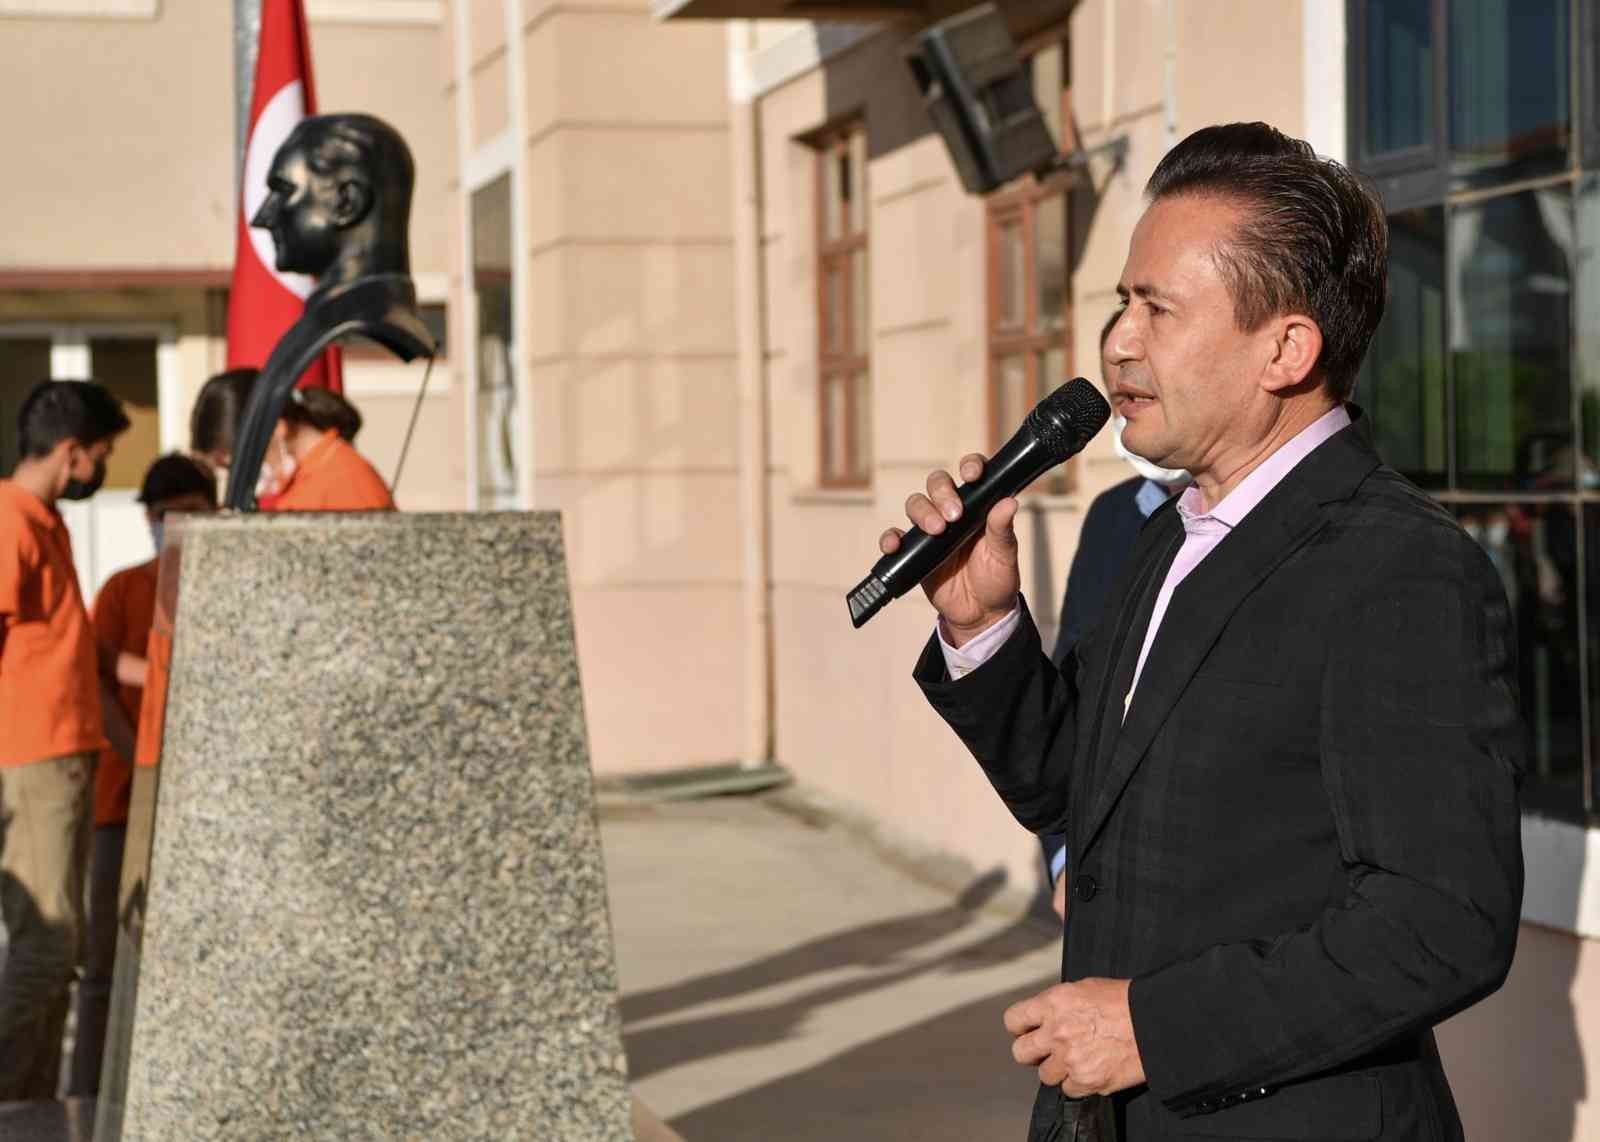 Tuzla Belediye Başkanı Dr. Şadi Yazıcı: “Bizler için en kıymetli olan şey sizlersiniz” #istanbul